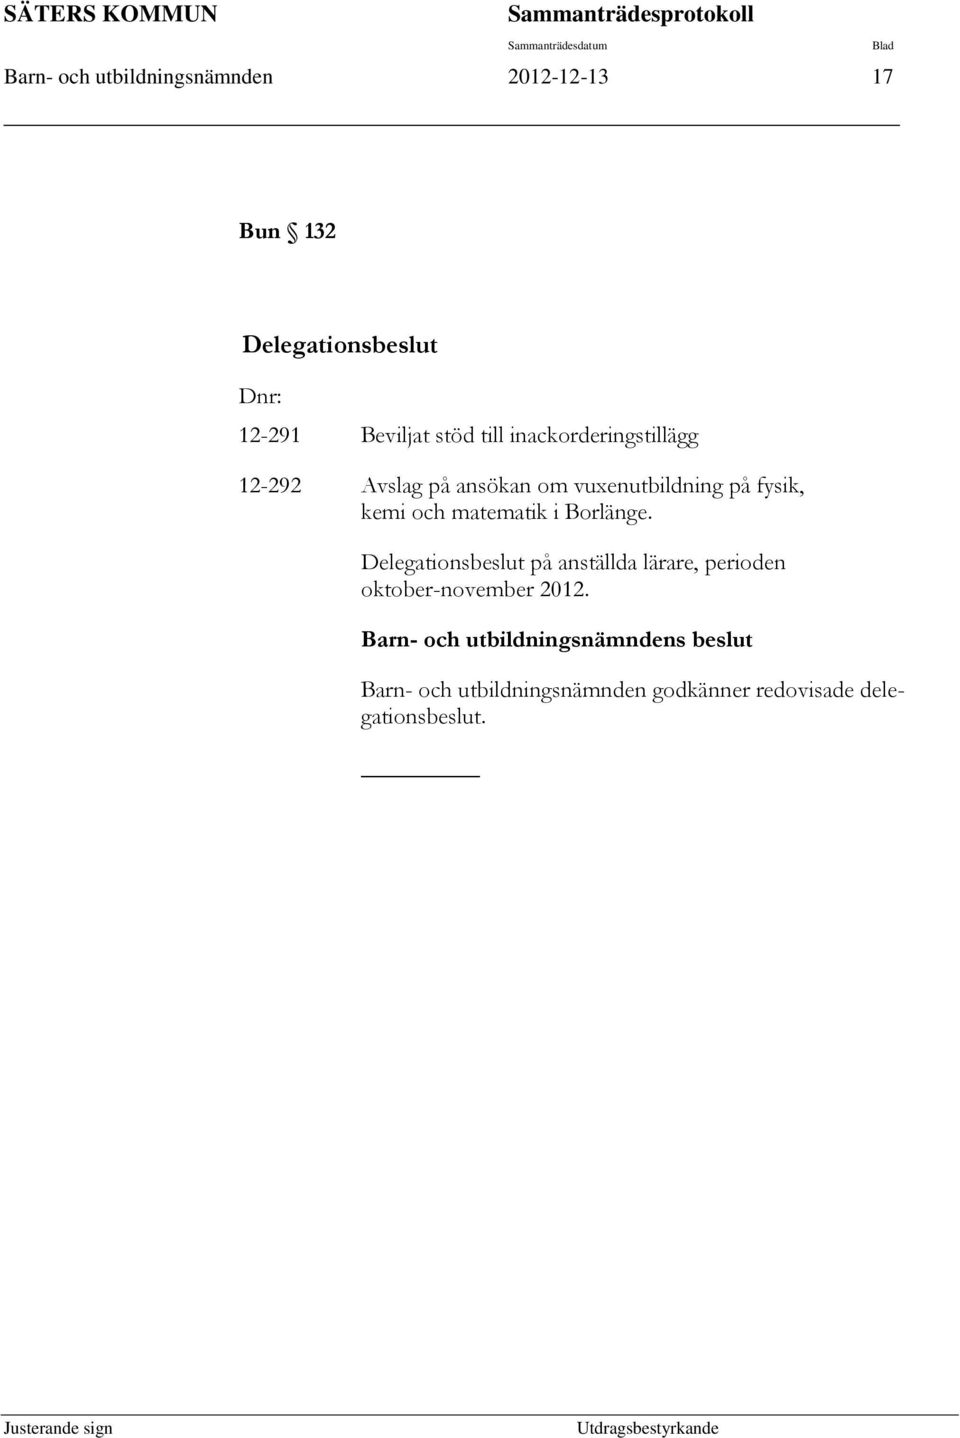 kemi och matematik i Borlänge. Delegationsbeslut på anställda lärare, perioden oktober-november 2012.